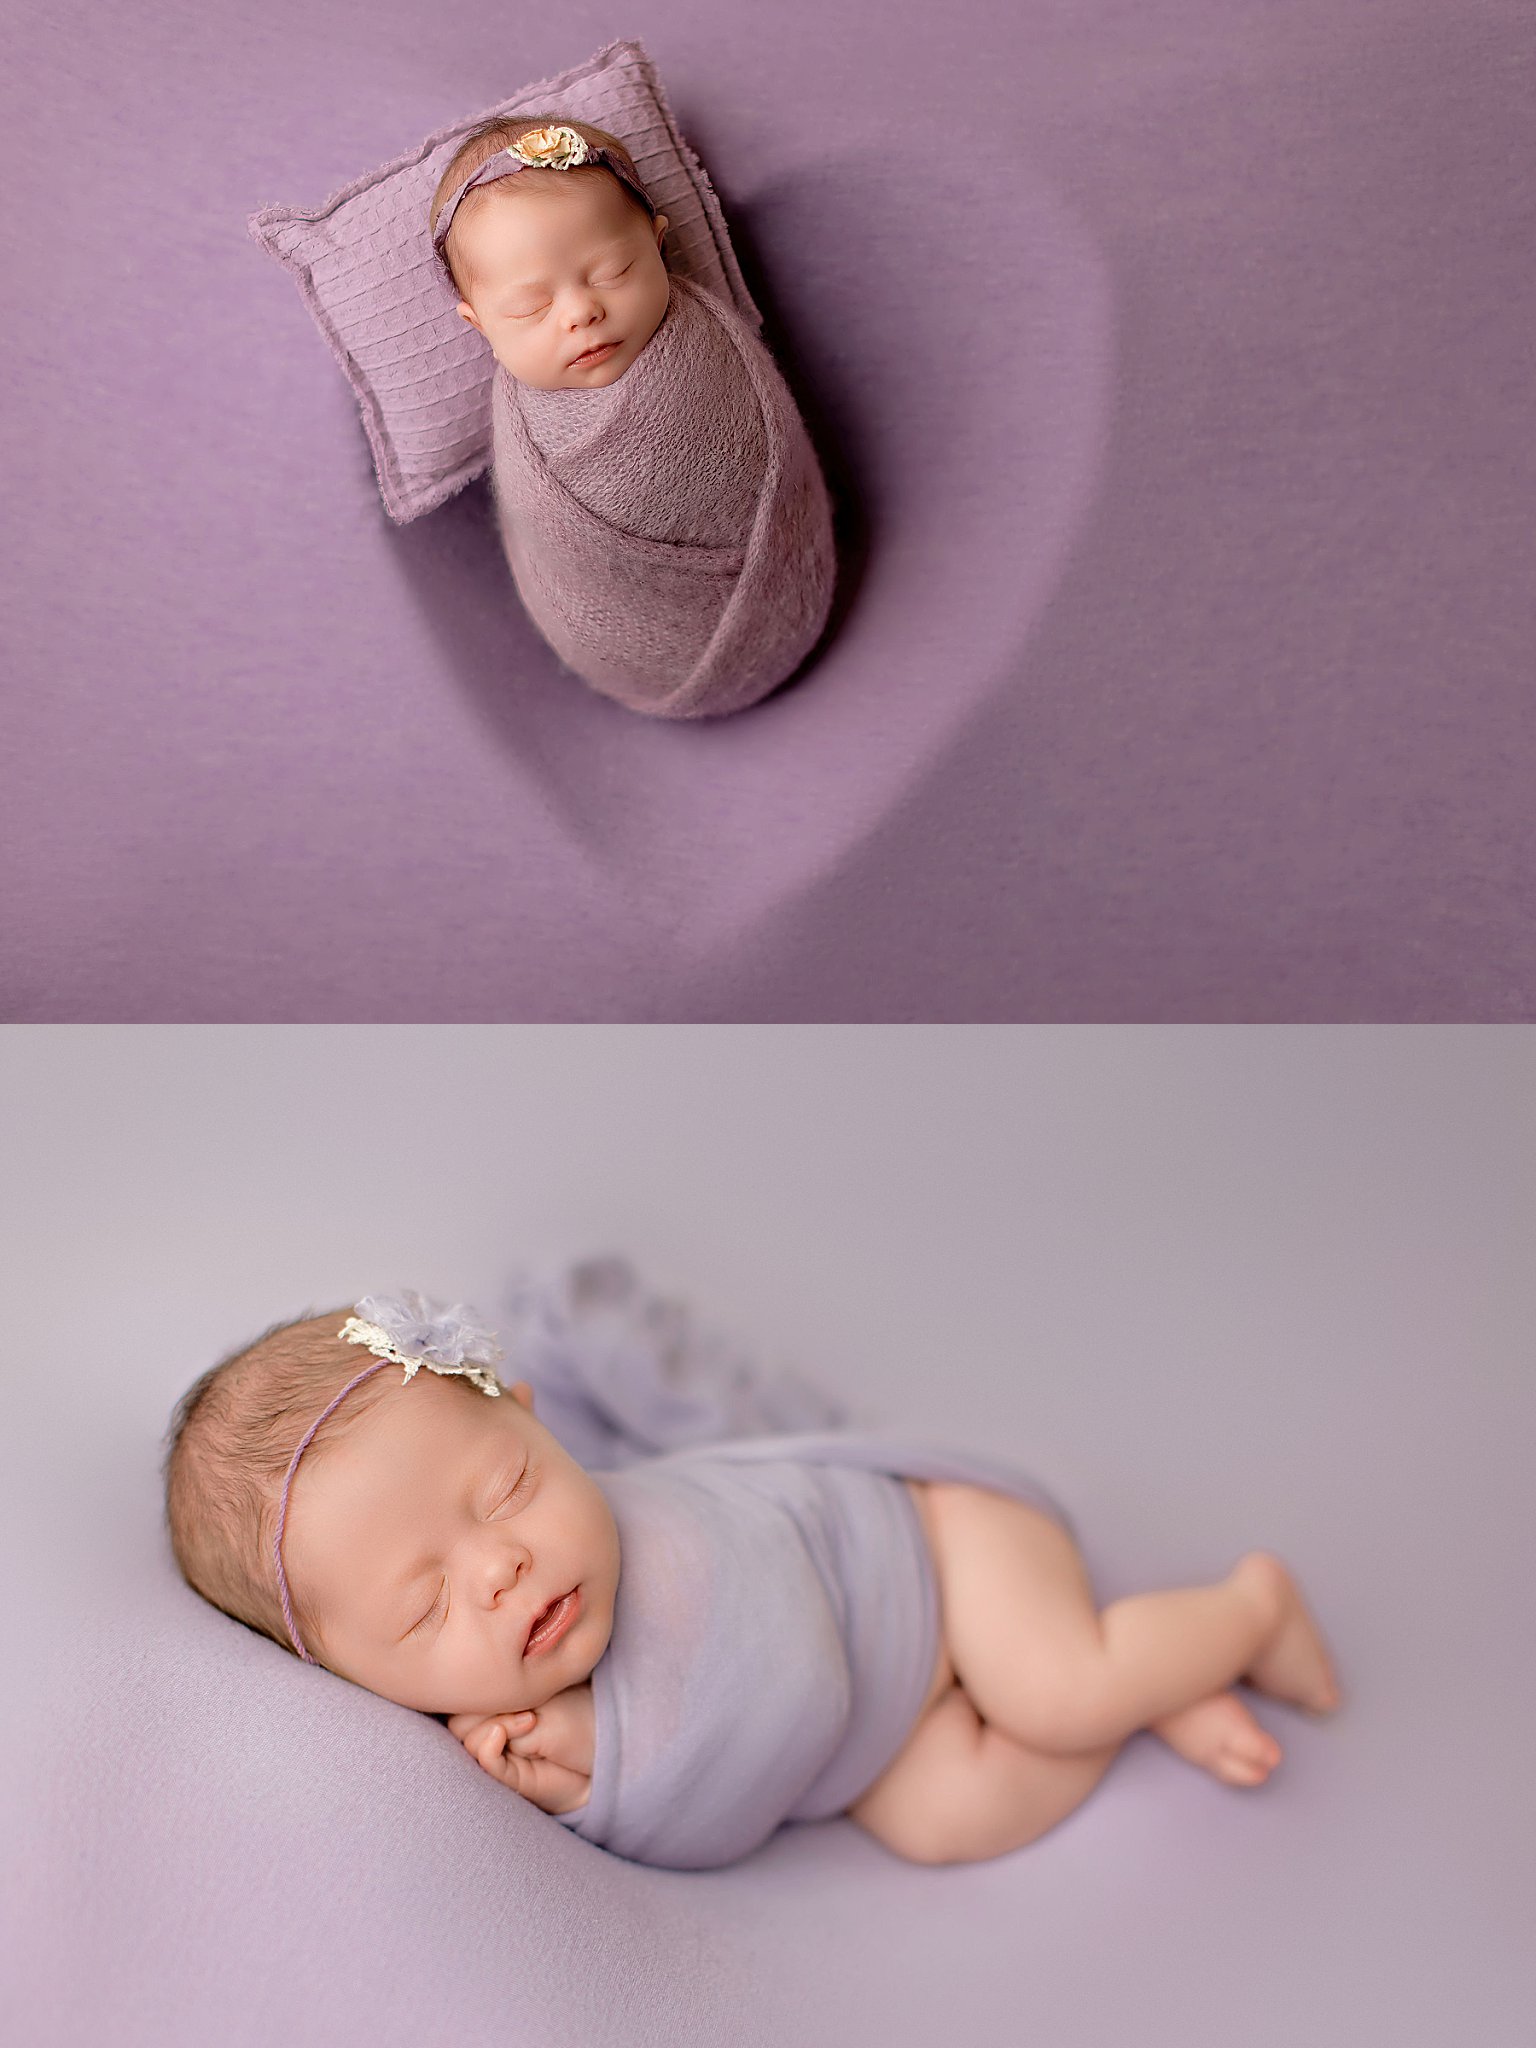 infant sleeps while swaddled on heart-shaped set by Charlottesville photographer